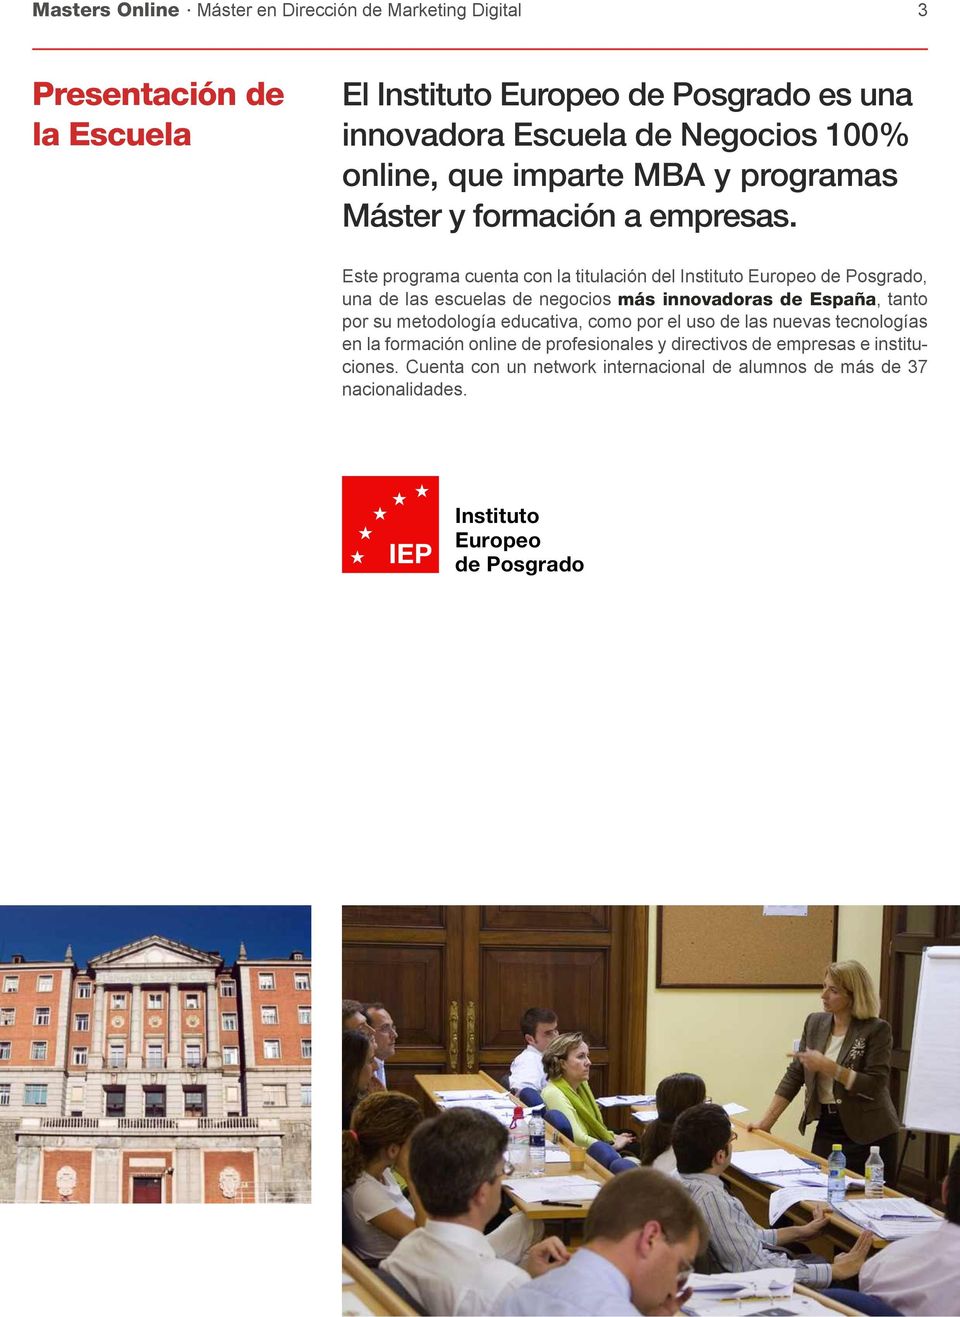 Este programa cuenta con la titulación del Instituto Europeo de Posgrado, una de las escuelas de negocios más innovadoras de España, tanto por